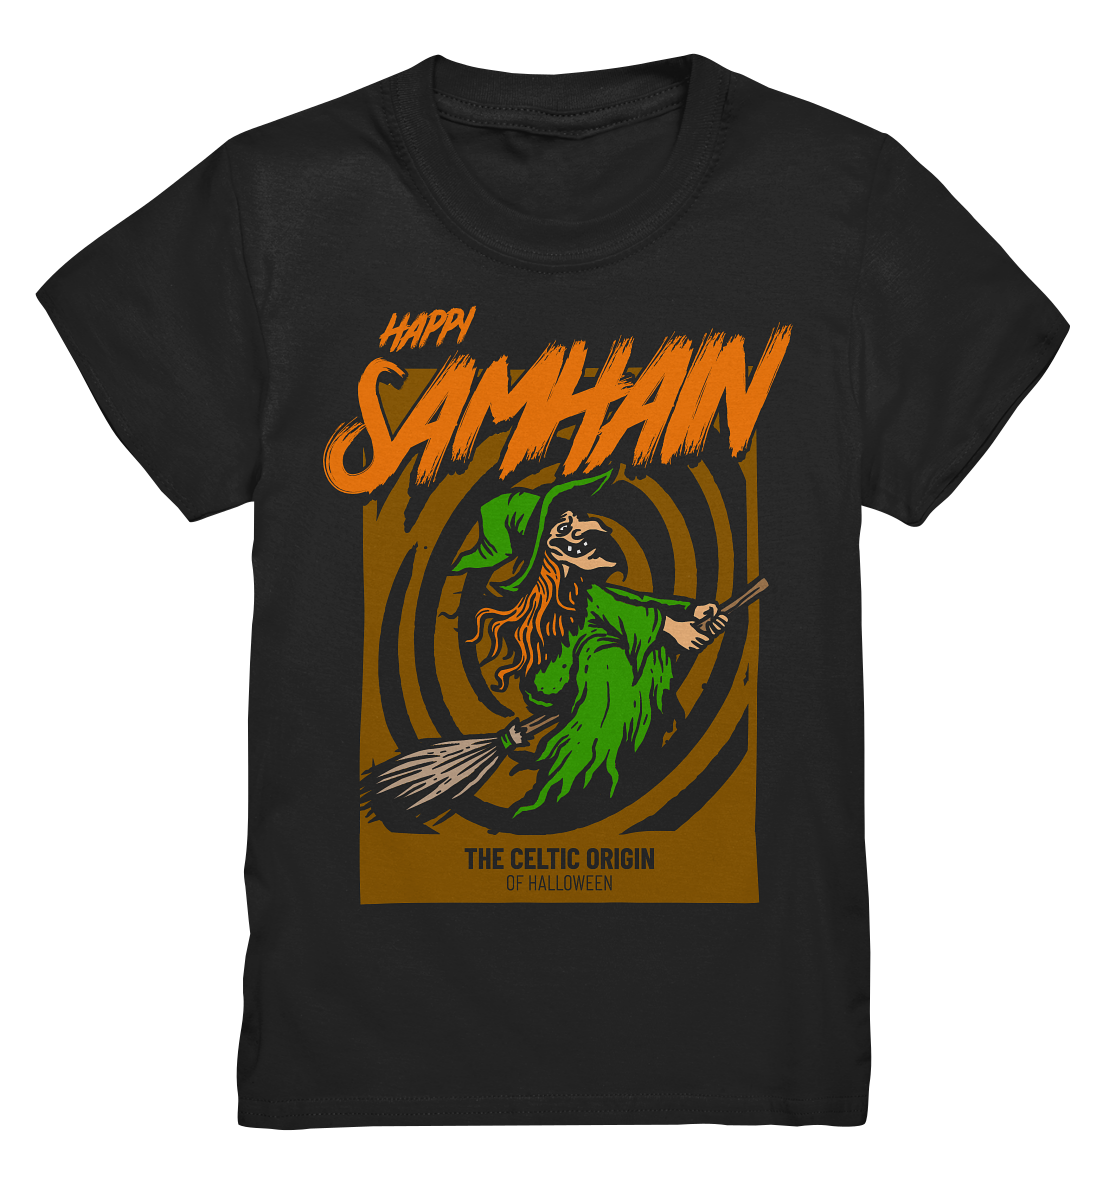 Happy Samhain "Witch" - Kids Premium Shirt